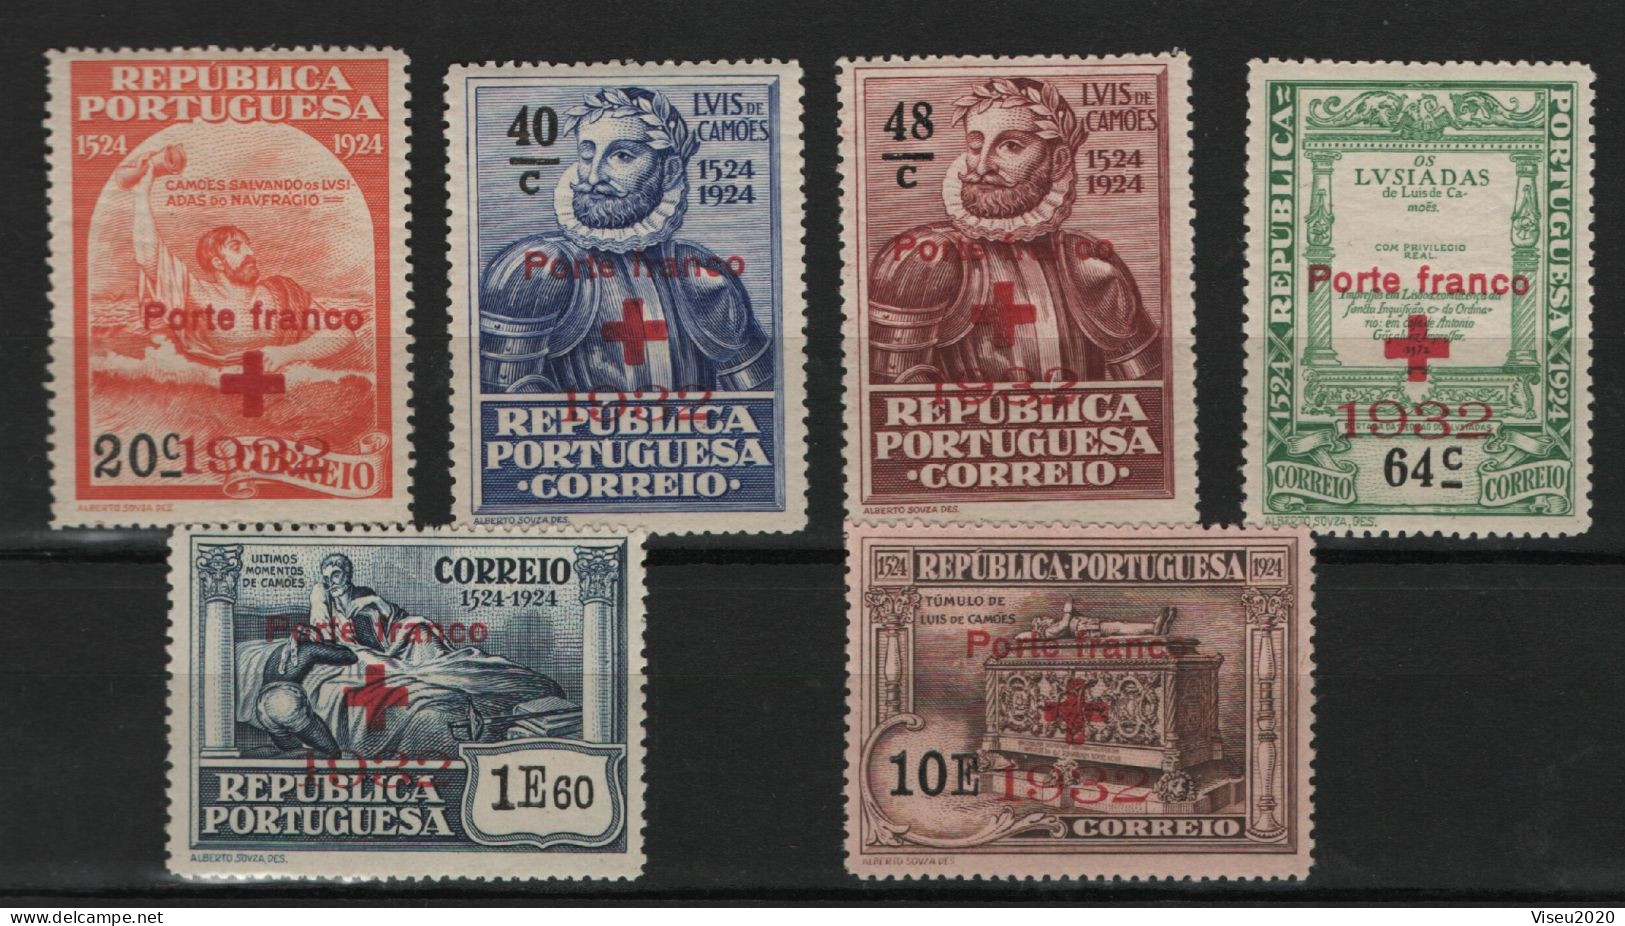 Portugal Porte Franco 1932 - Selos Do 4º Centenário Do Nascimento De Luís De Camões (1924) OVP - Set Completo - Unused Stamps